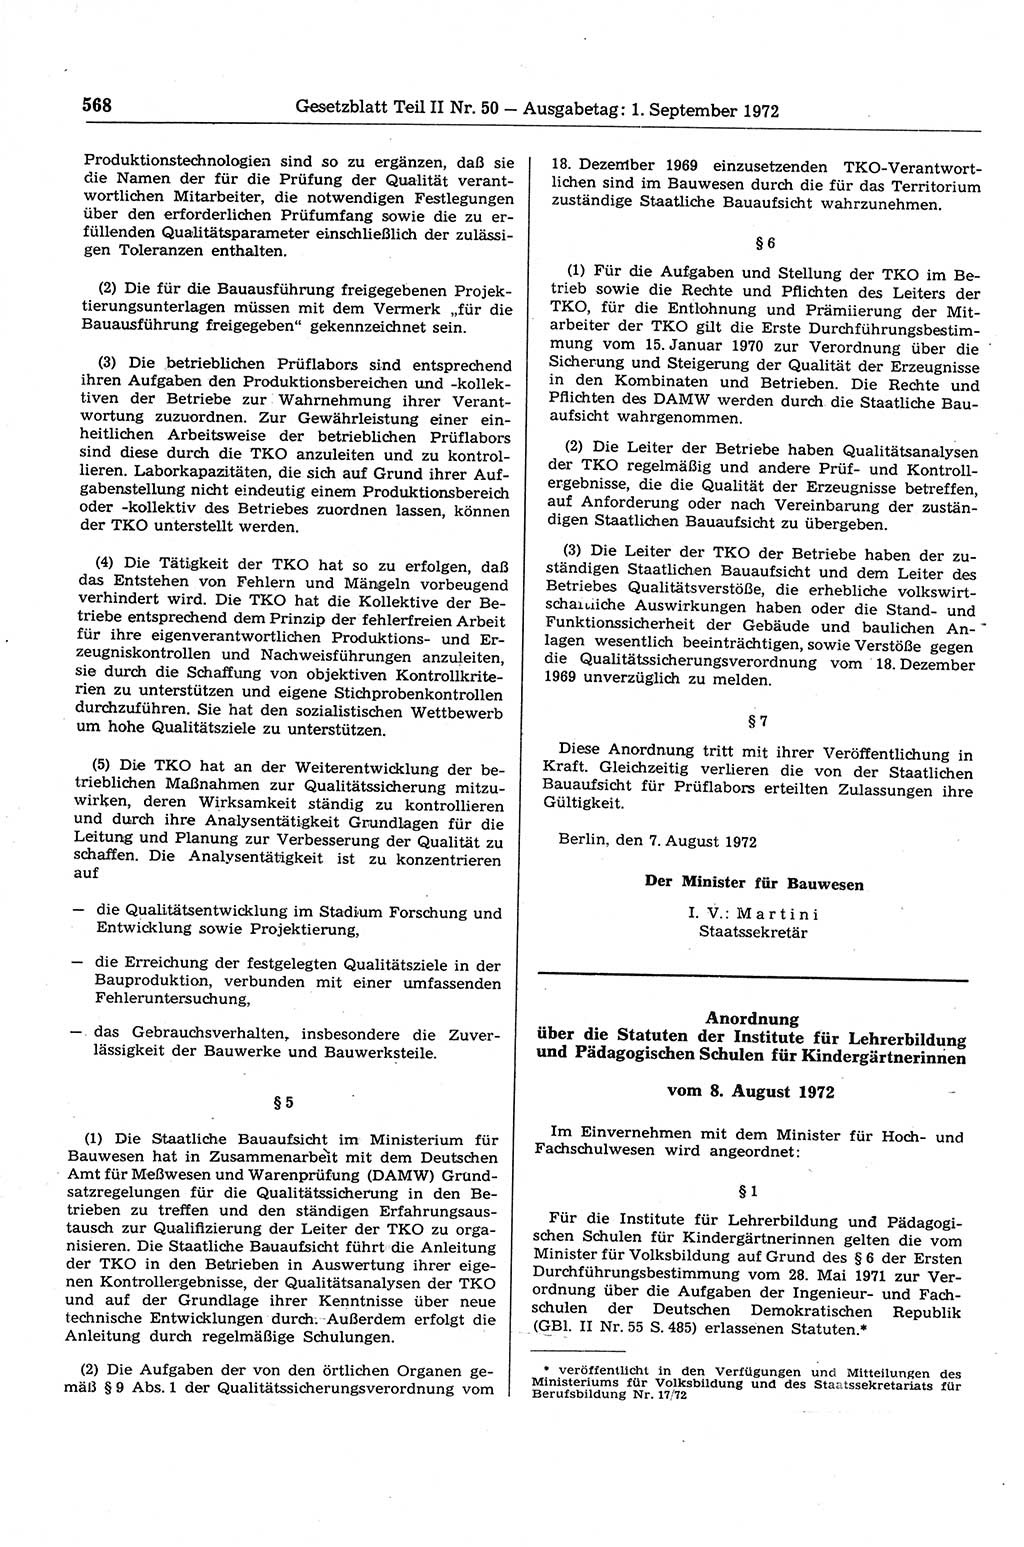 Gesetzblatt (GBl.) der Deutschen Demokratischen Republik (DDR) Teil ⅠⅠ 1972, Seite 568 (GBl. DDR ⅠⅠ 1972, S. 568)